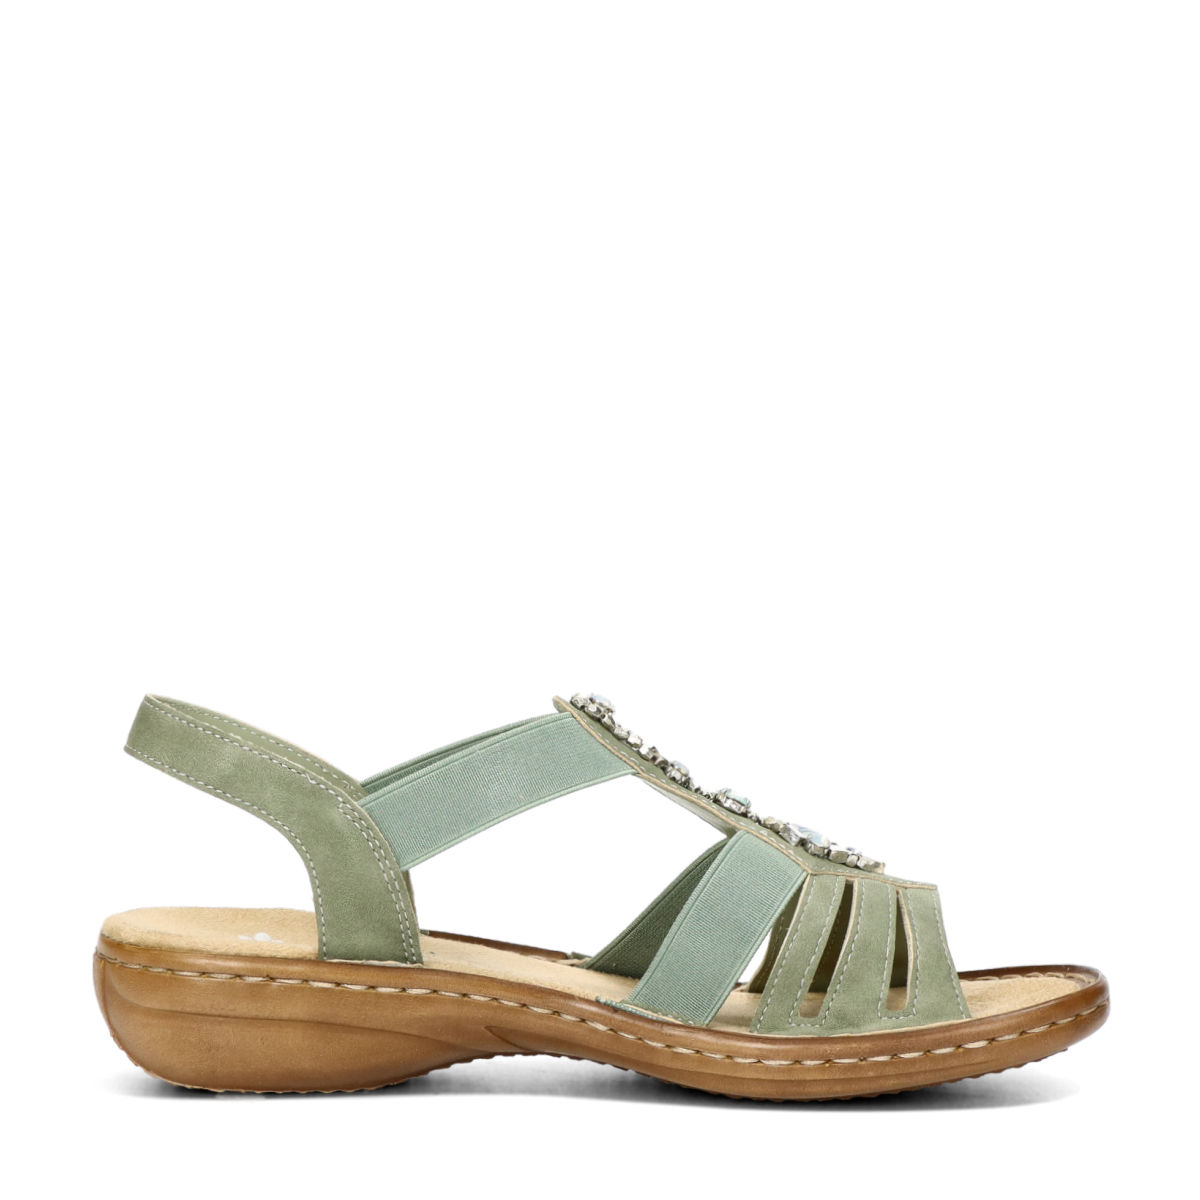 Ontdekking Tomaat Worstelen Rieker women's comfortable sandals - green | Robel.shoes